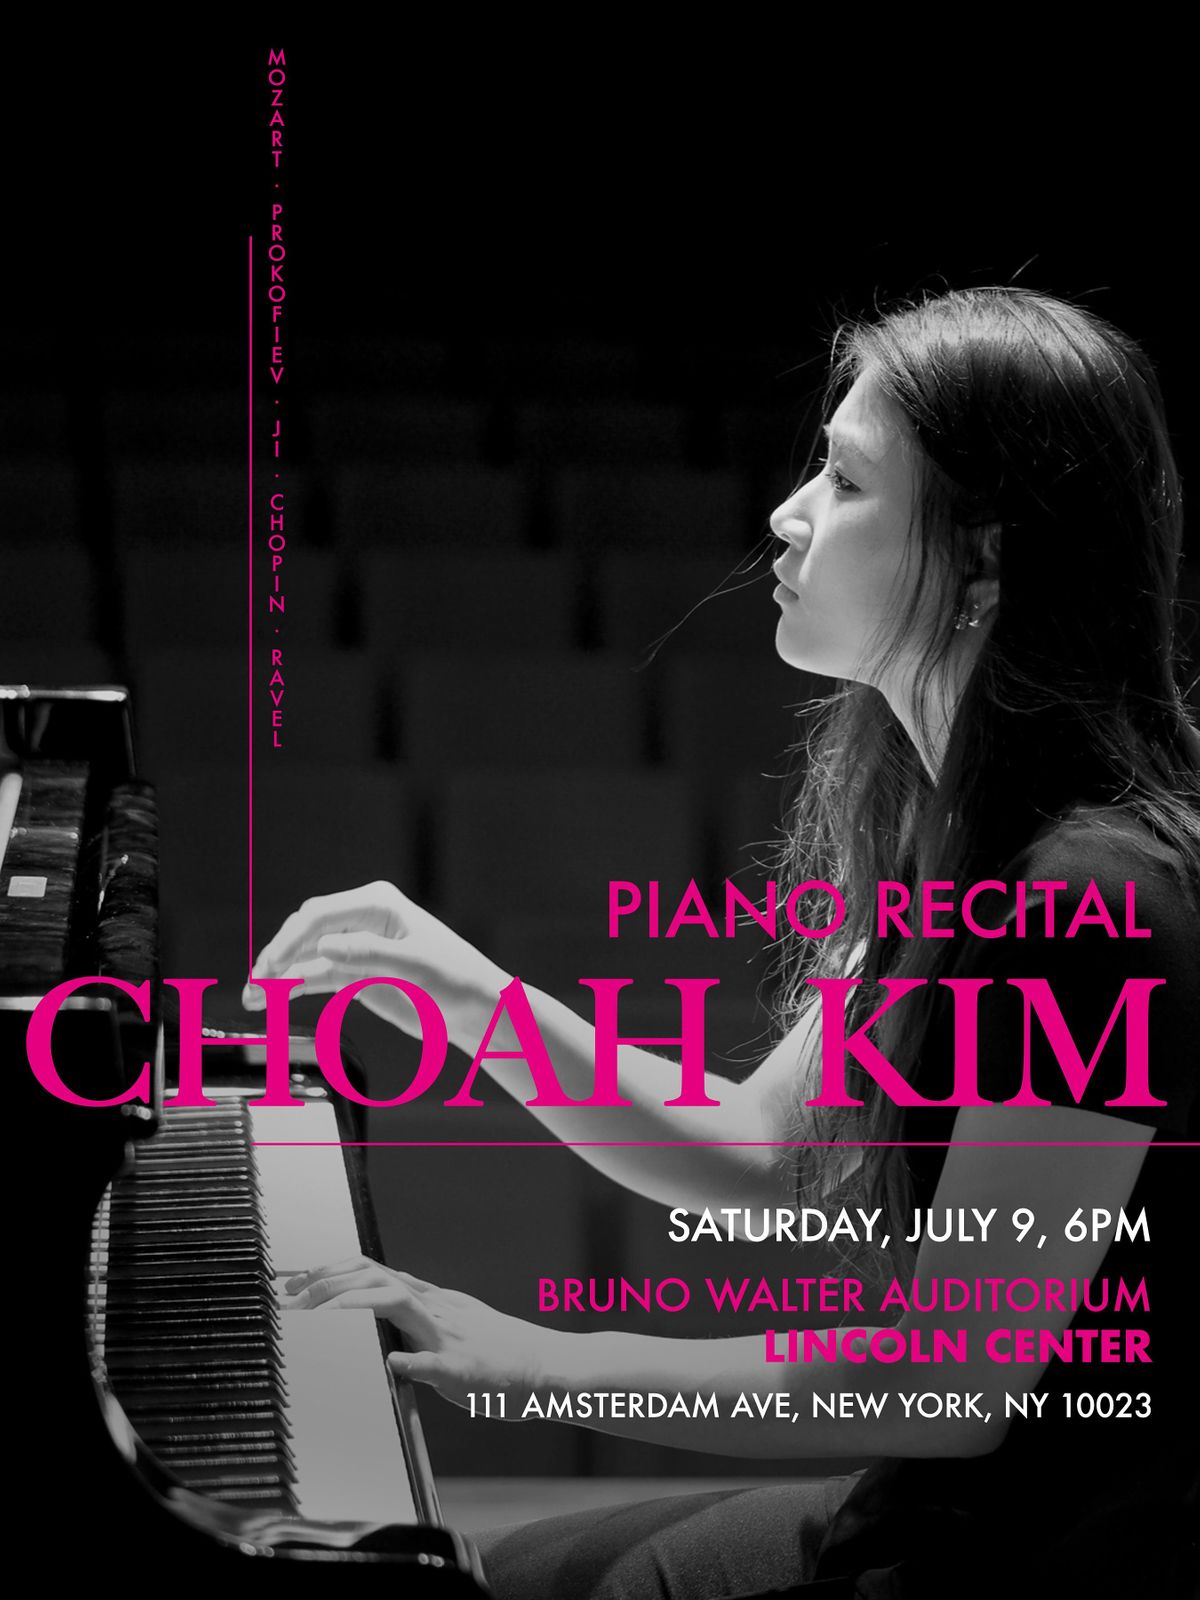 CHOAH KIM PIANO RECITAL